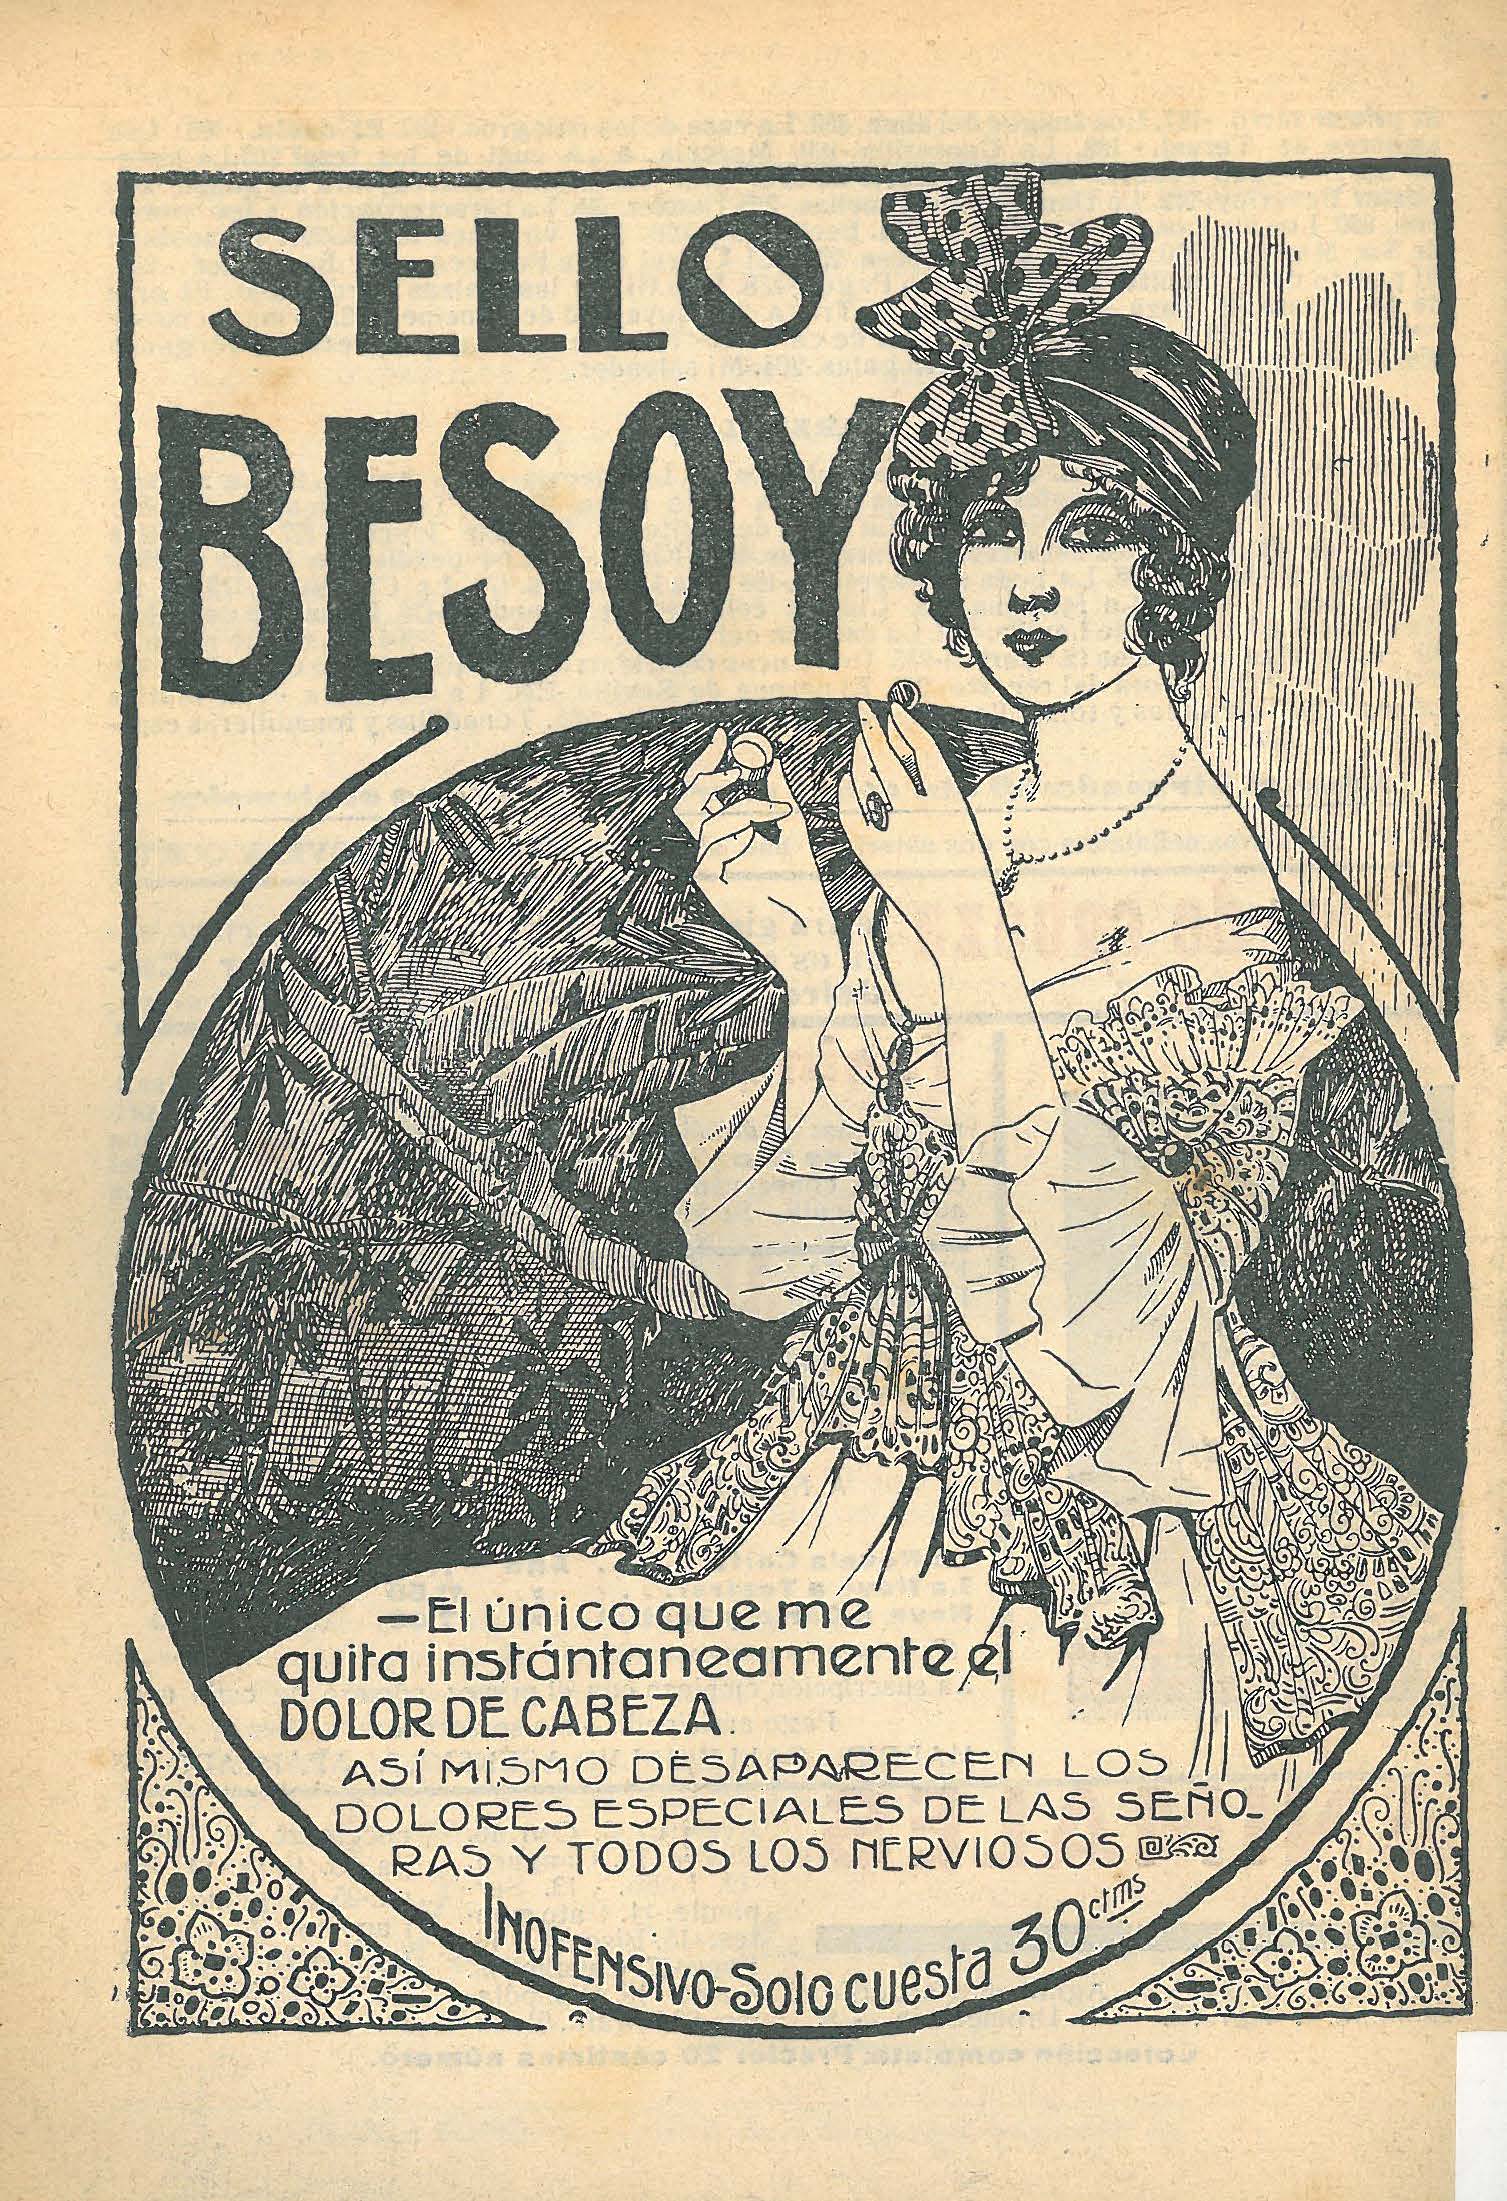  La publicitat a les col·leccions literàries de començaments del segle XX